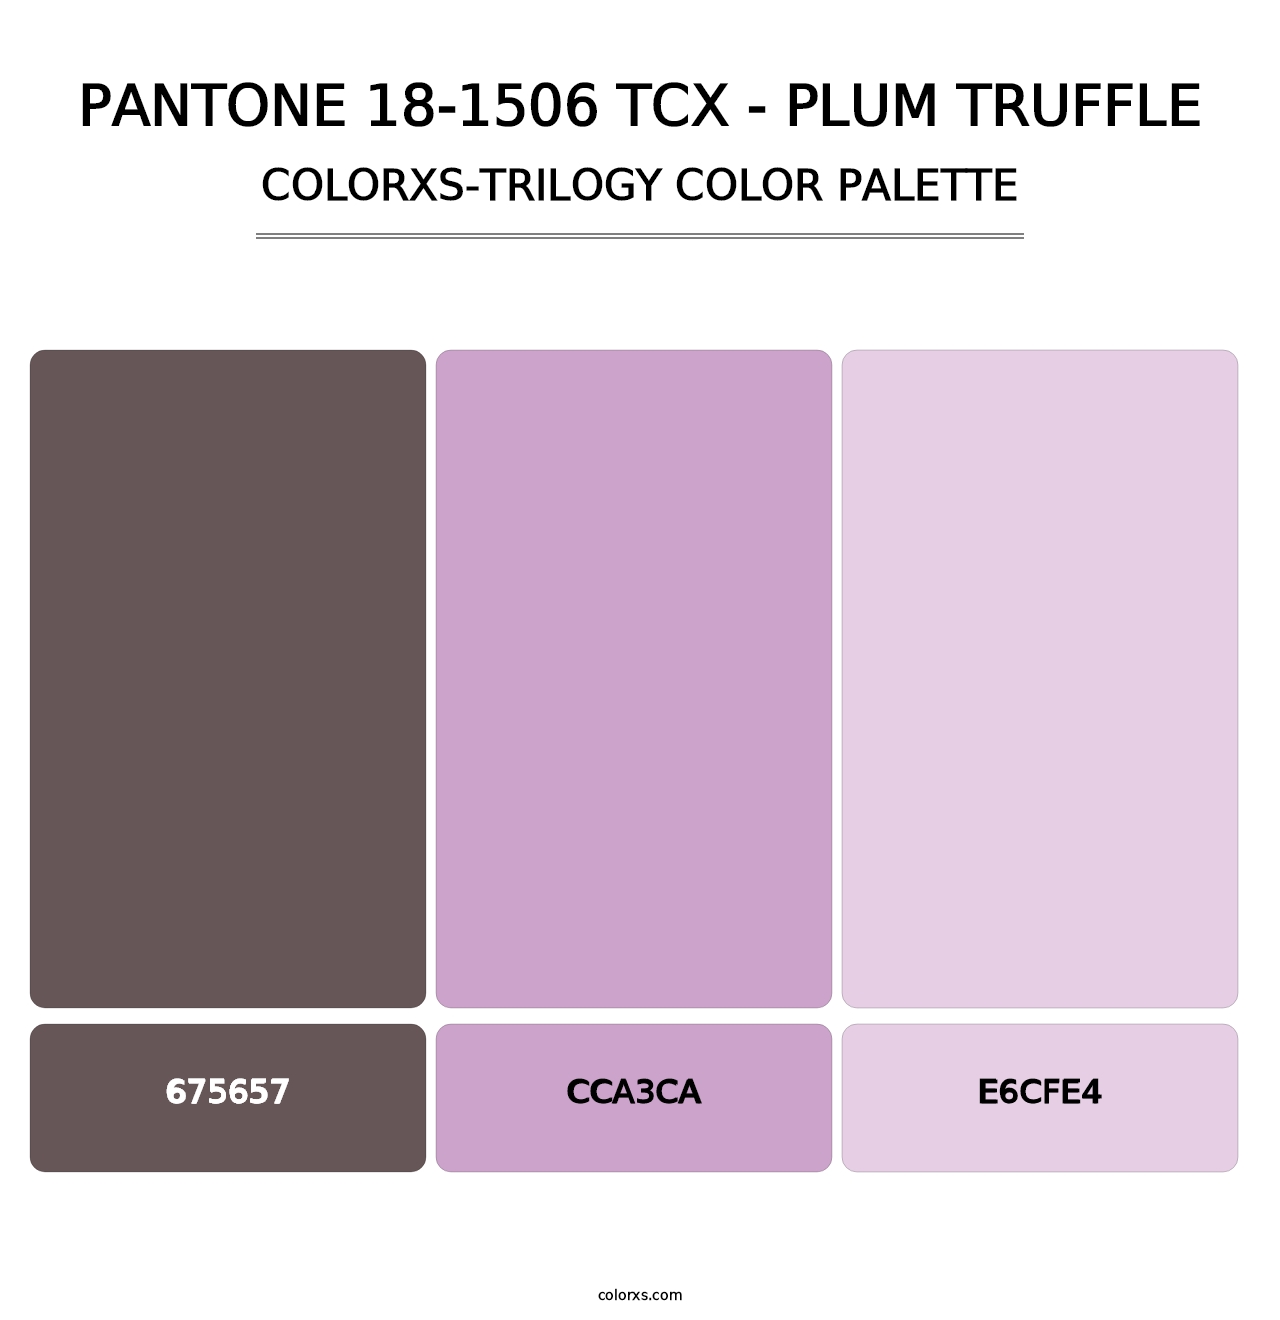 PANTONE 18-1506 TCX - Plum Truffle - Colorxs Trilogy Palette